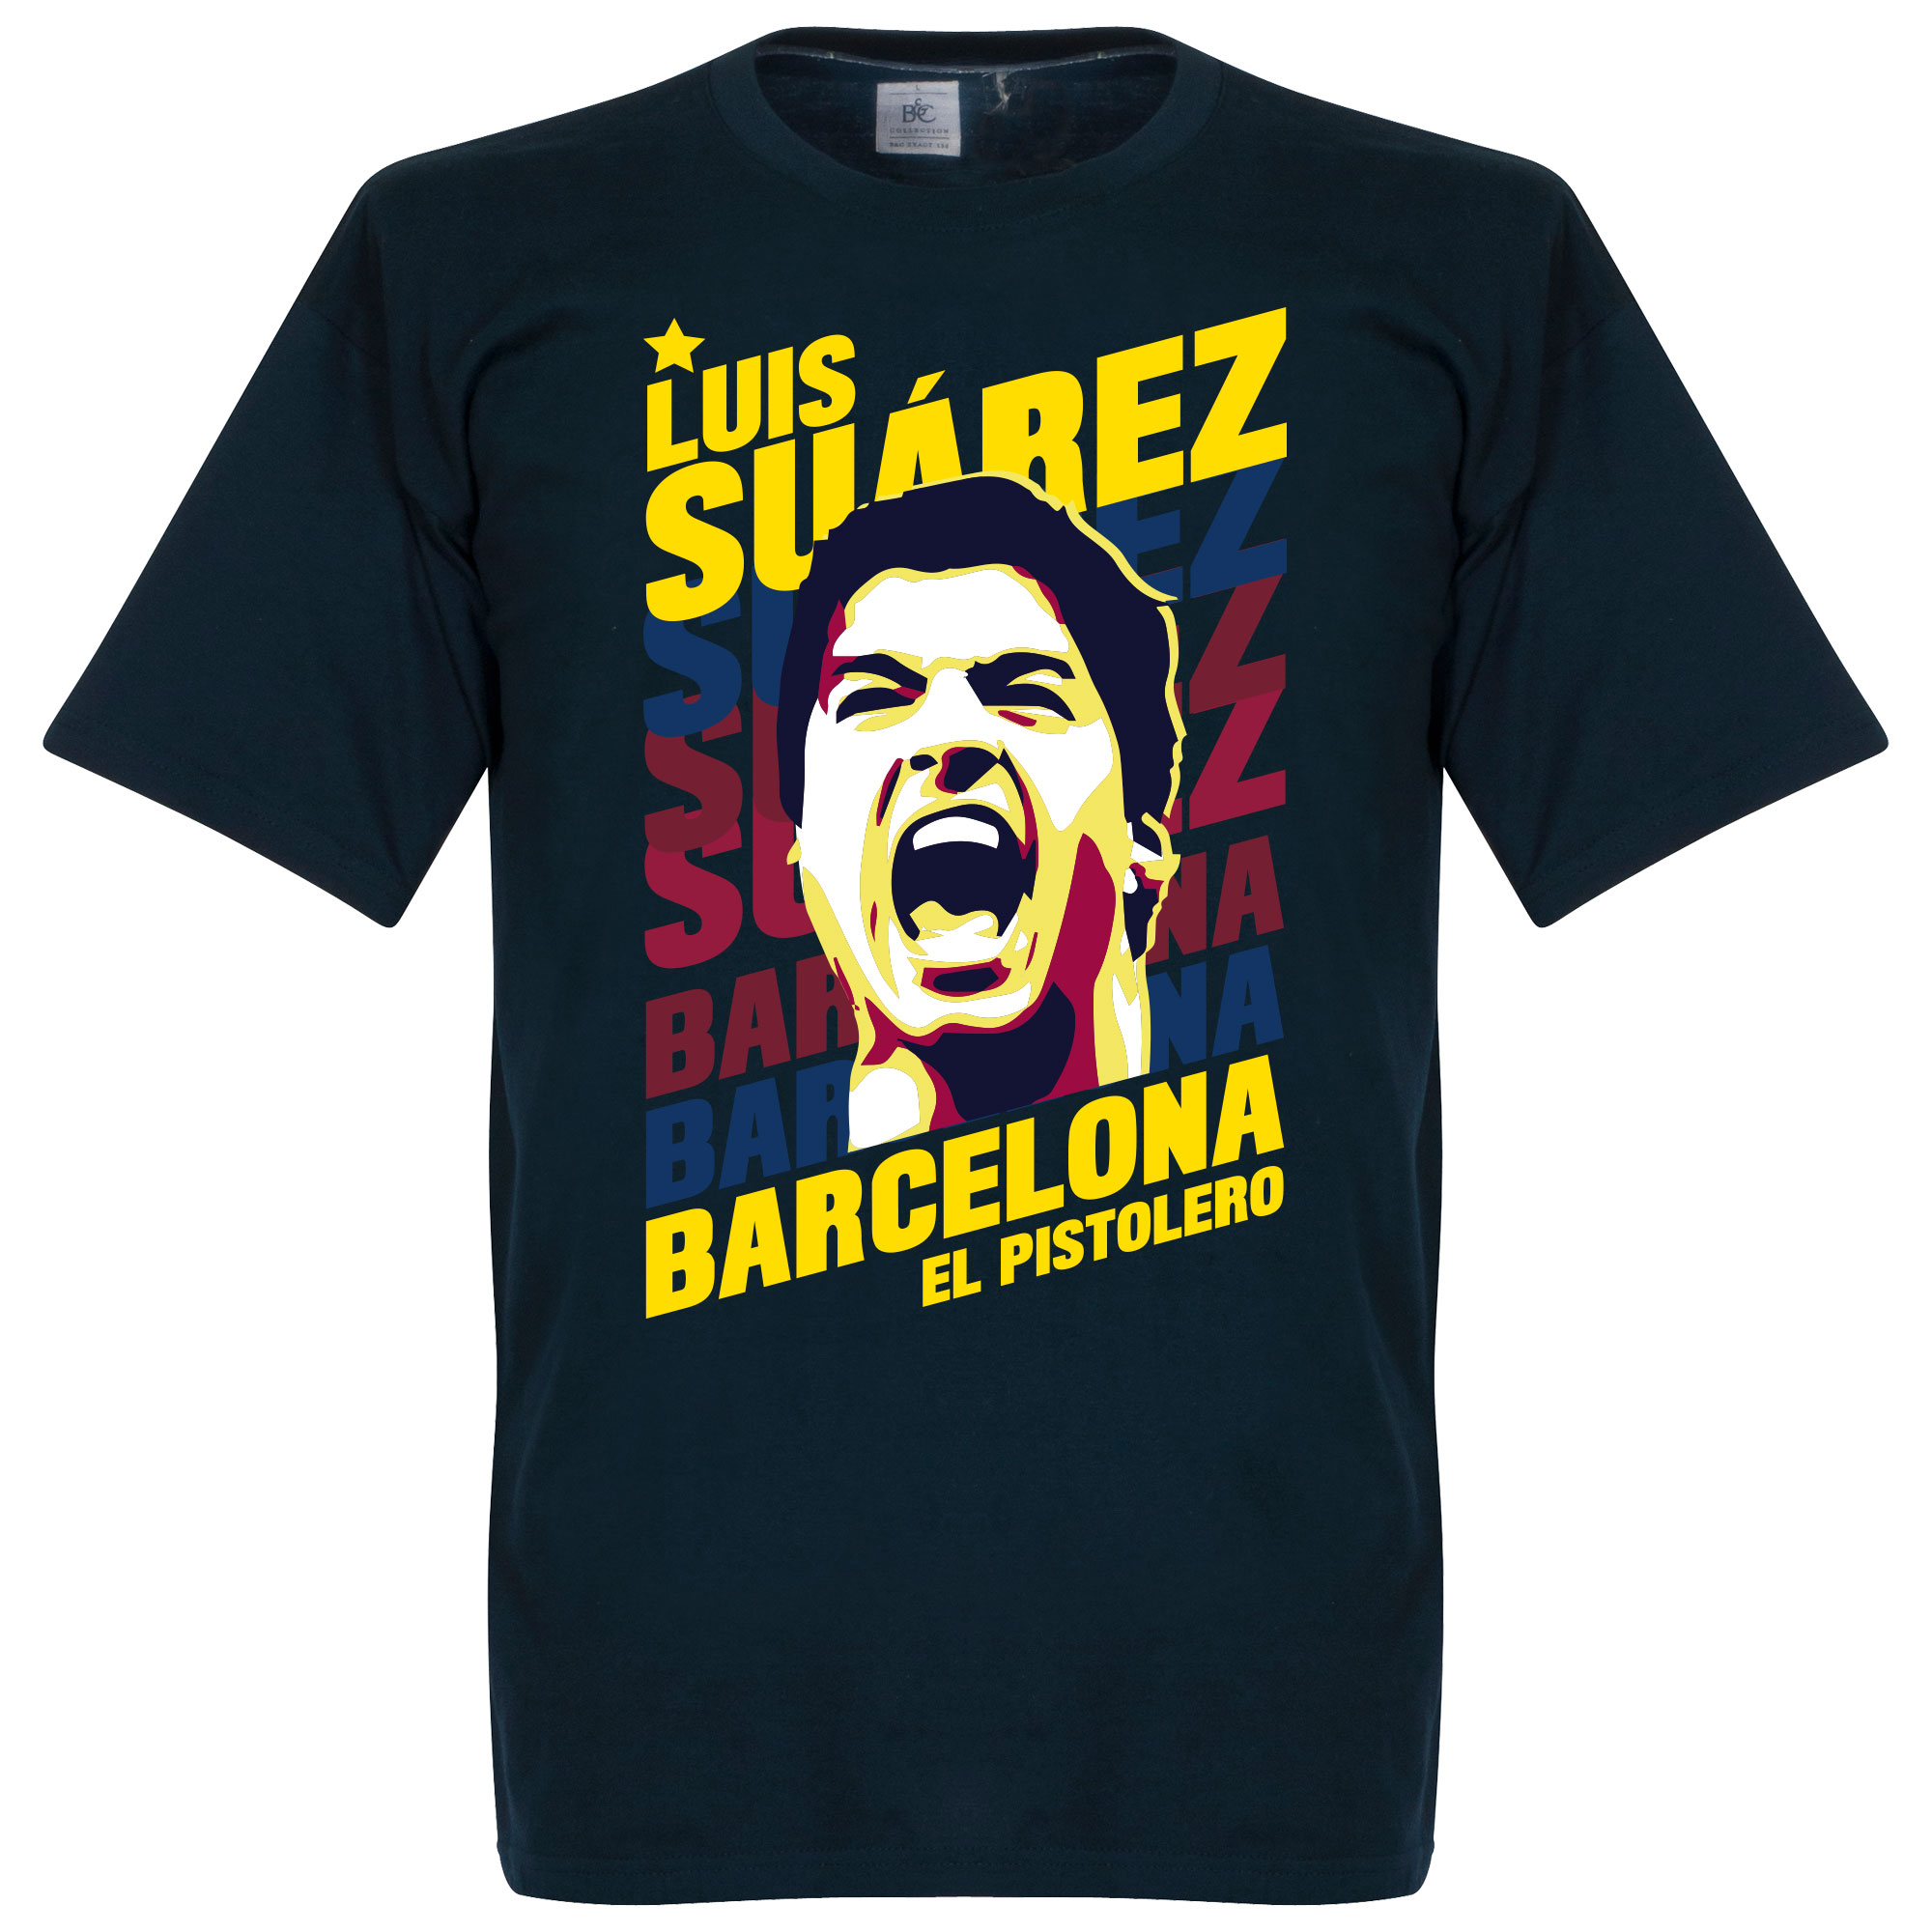 Luis Suarez Barcelona Portrait T-Shirt XXXL